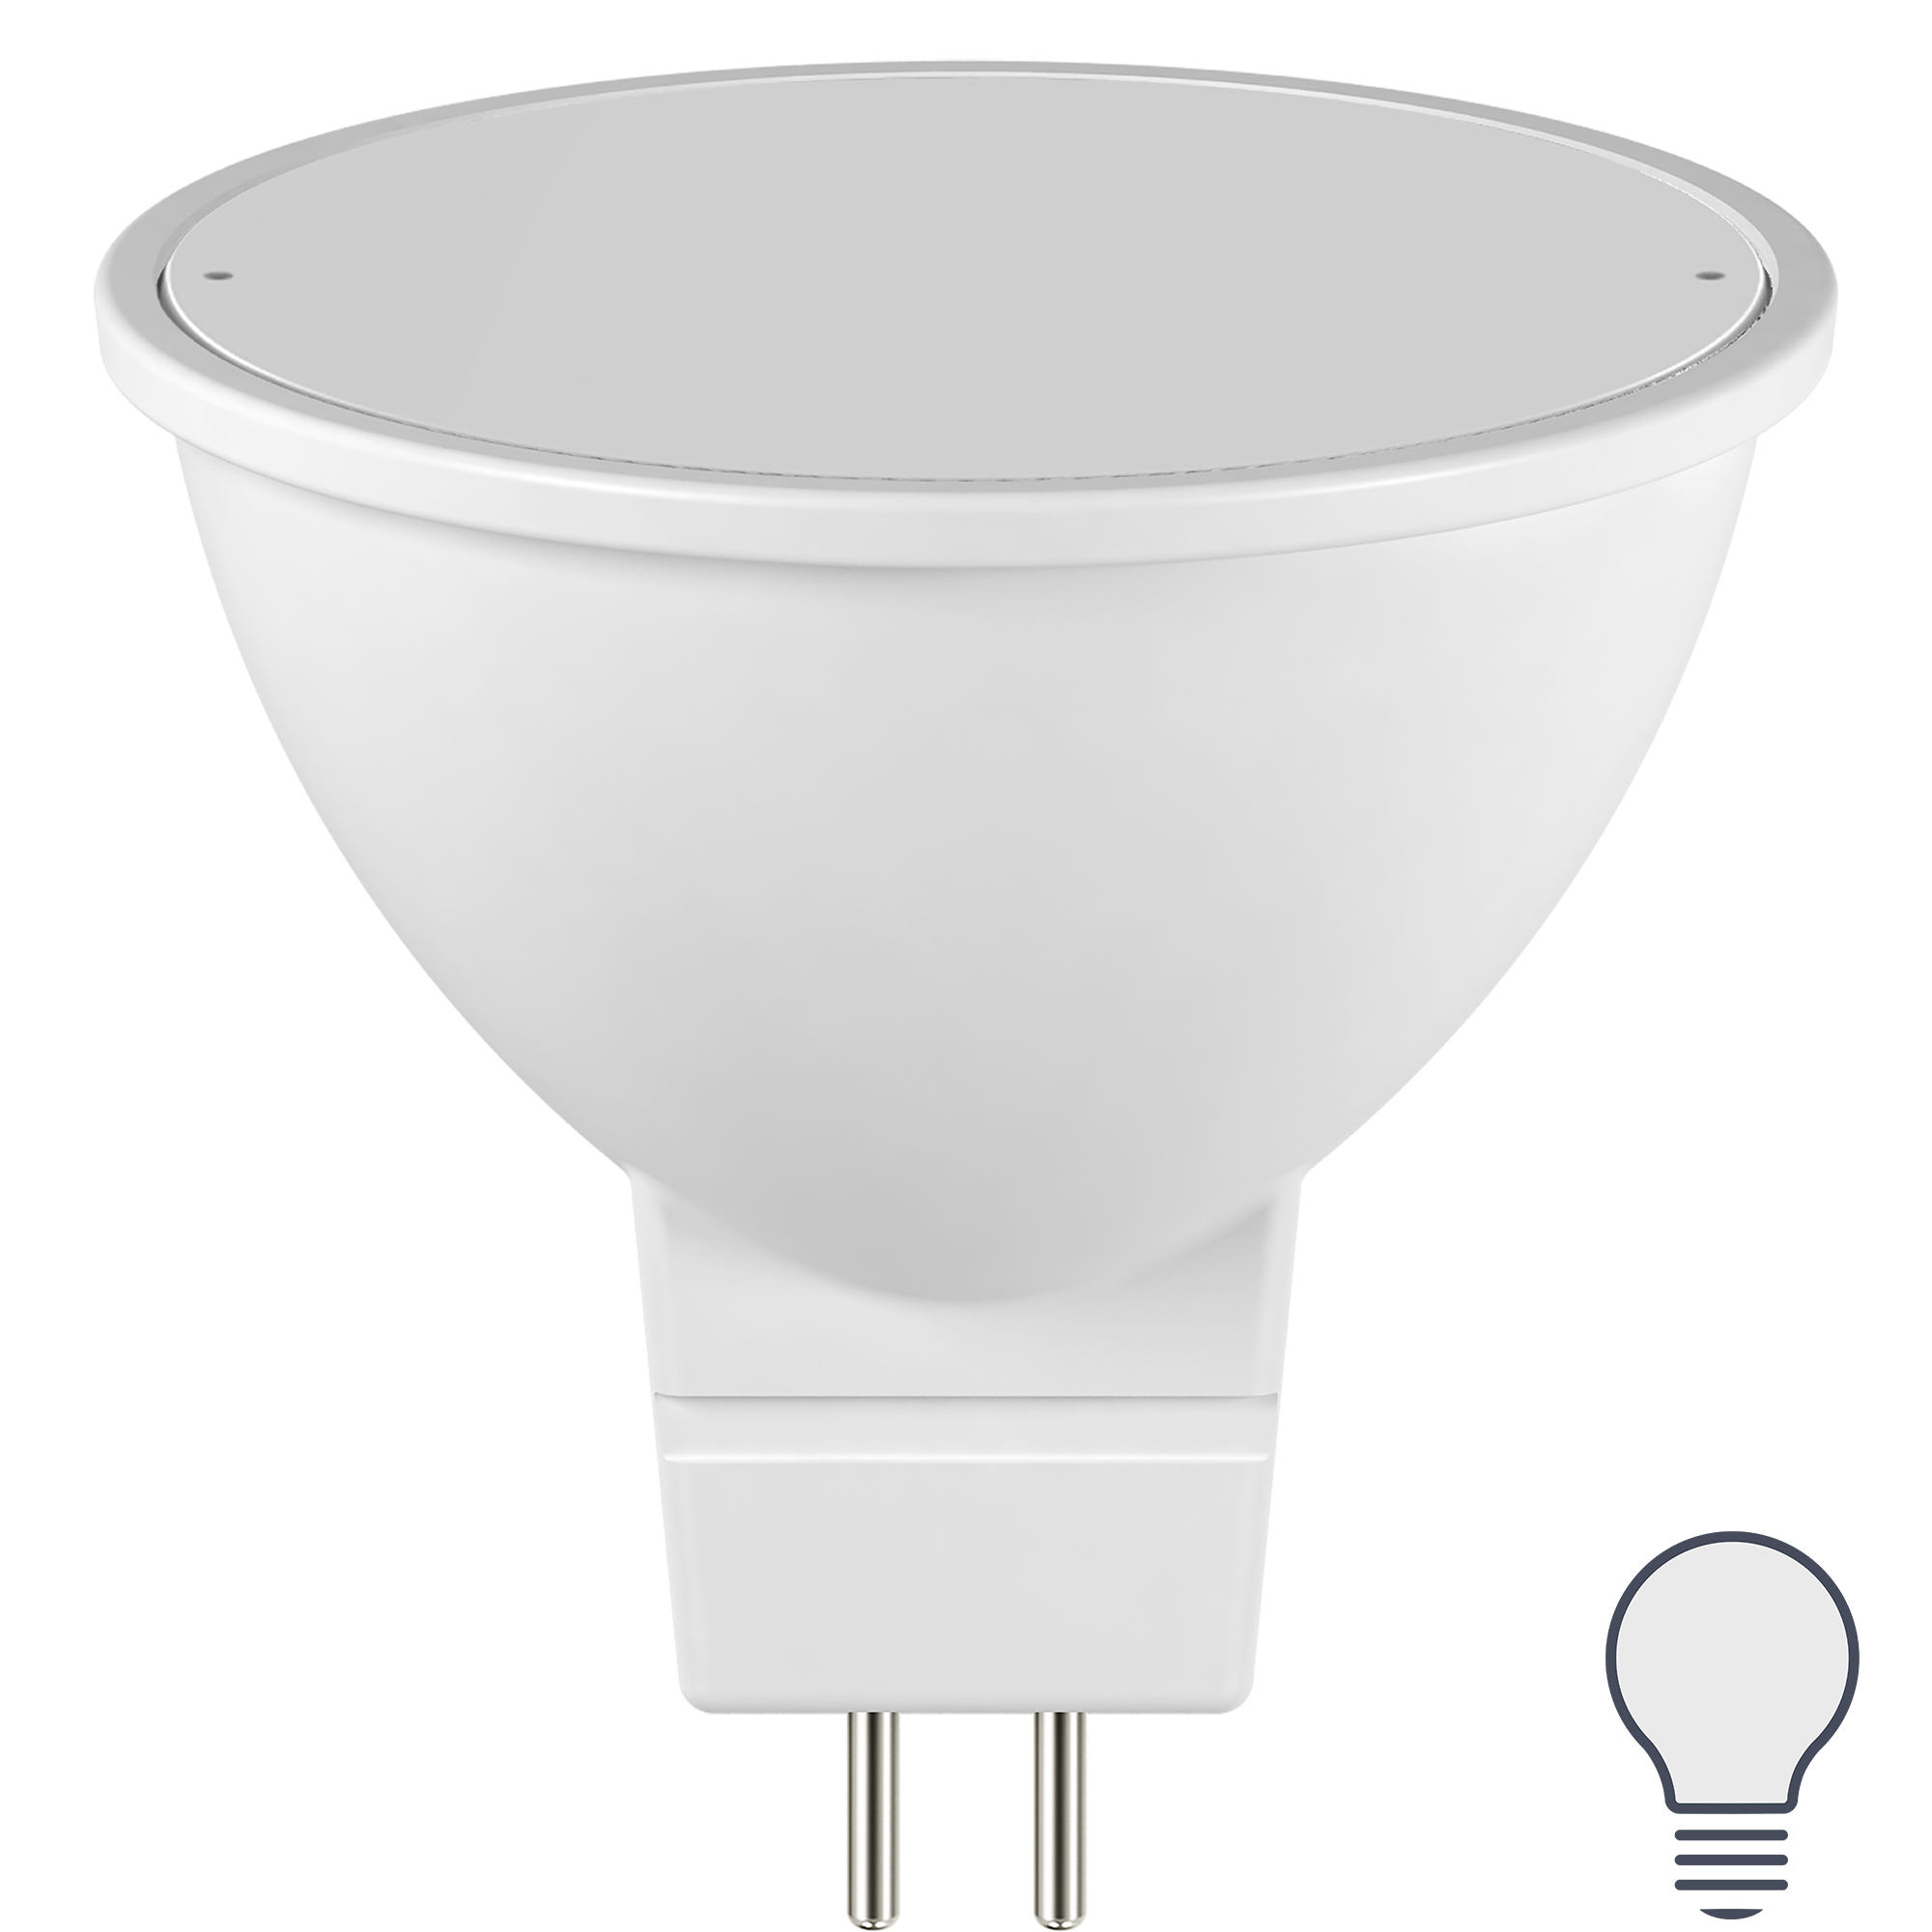 82991620 Лампа светодиодная Clear G5.3 175-250 В 6 Вт прозрачная 500 лм нейтральный белый свет STLM-0038581 LEXMAN